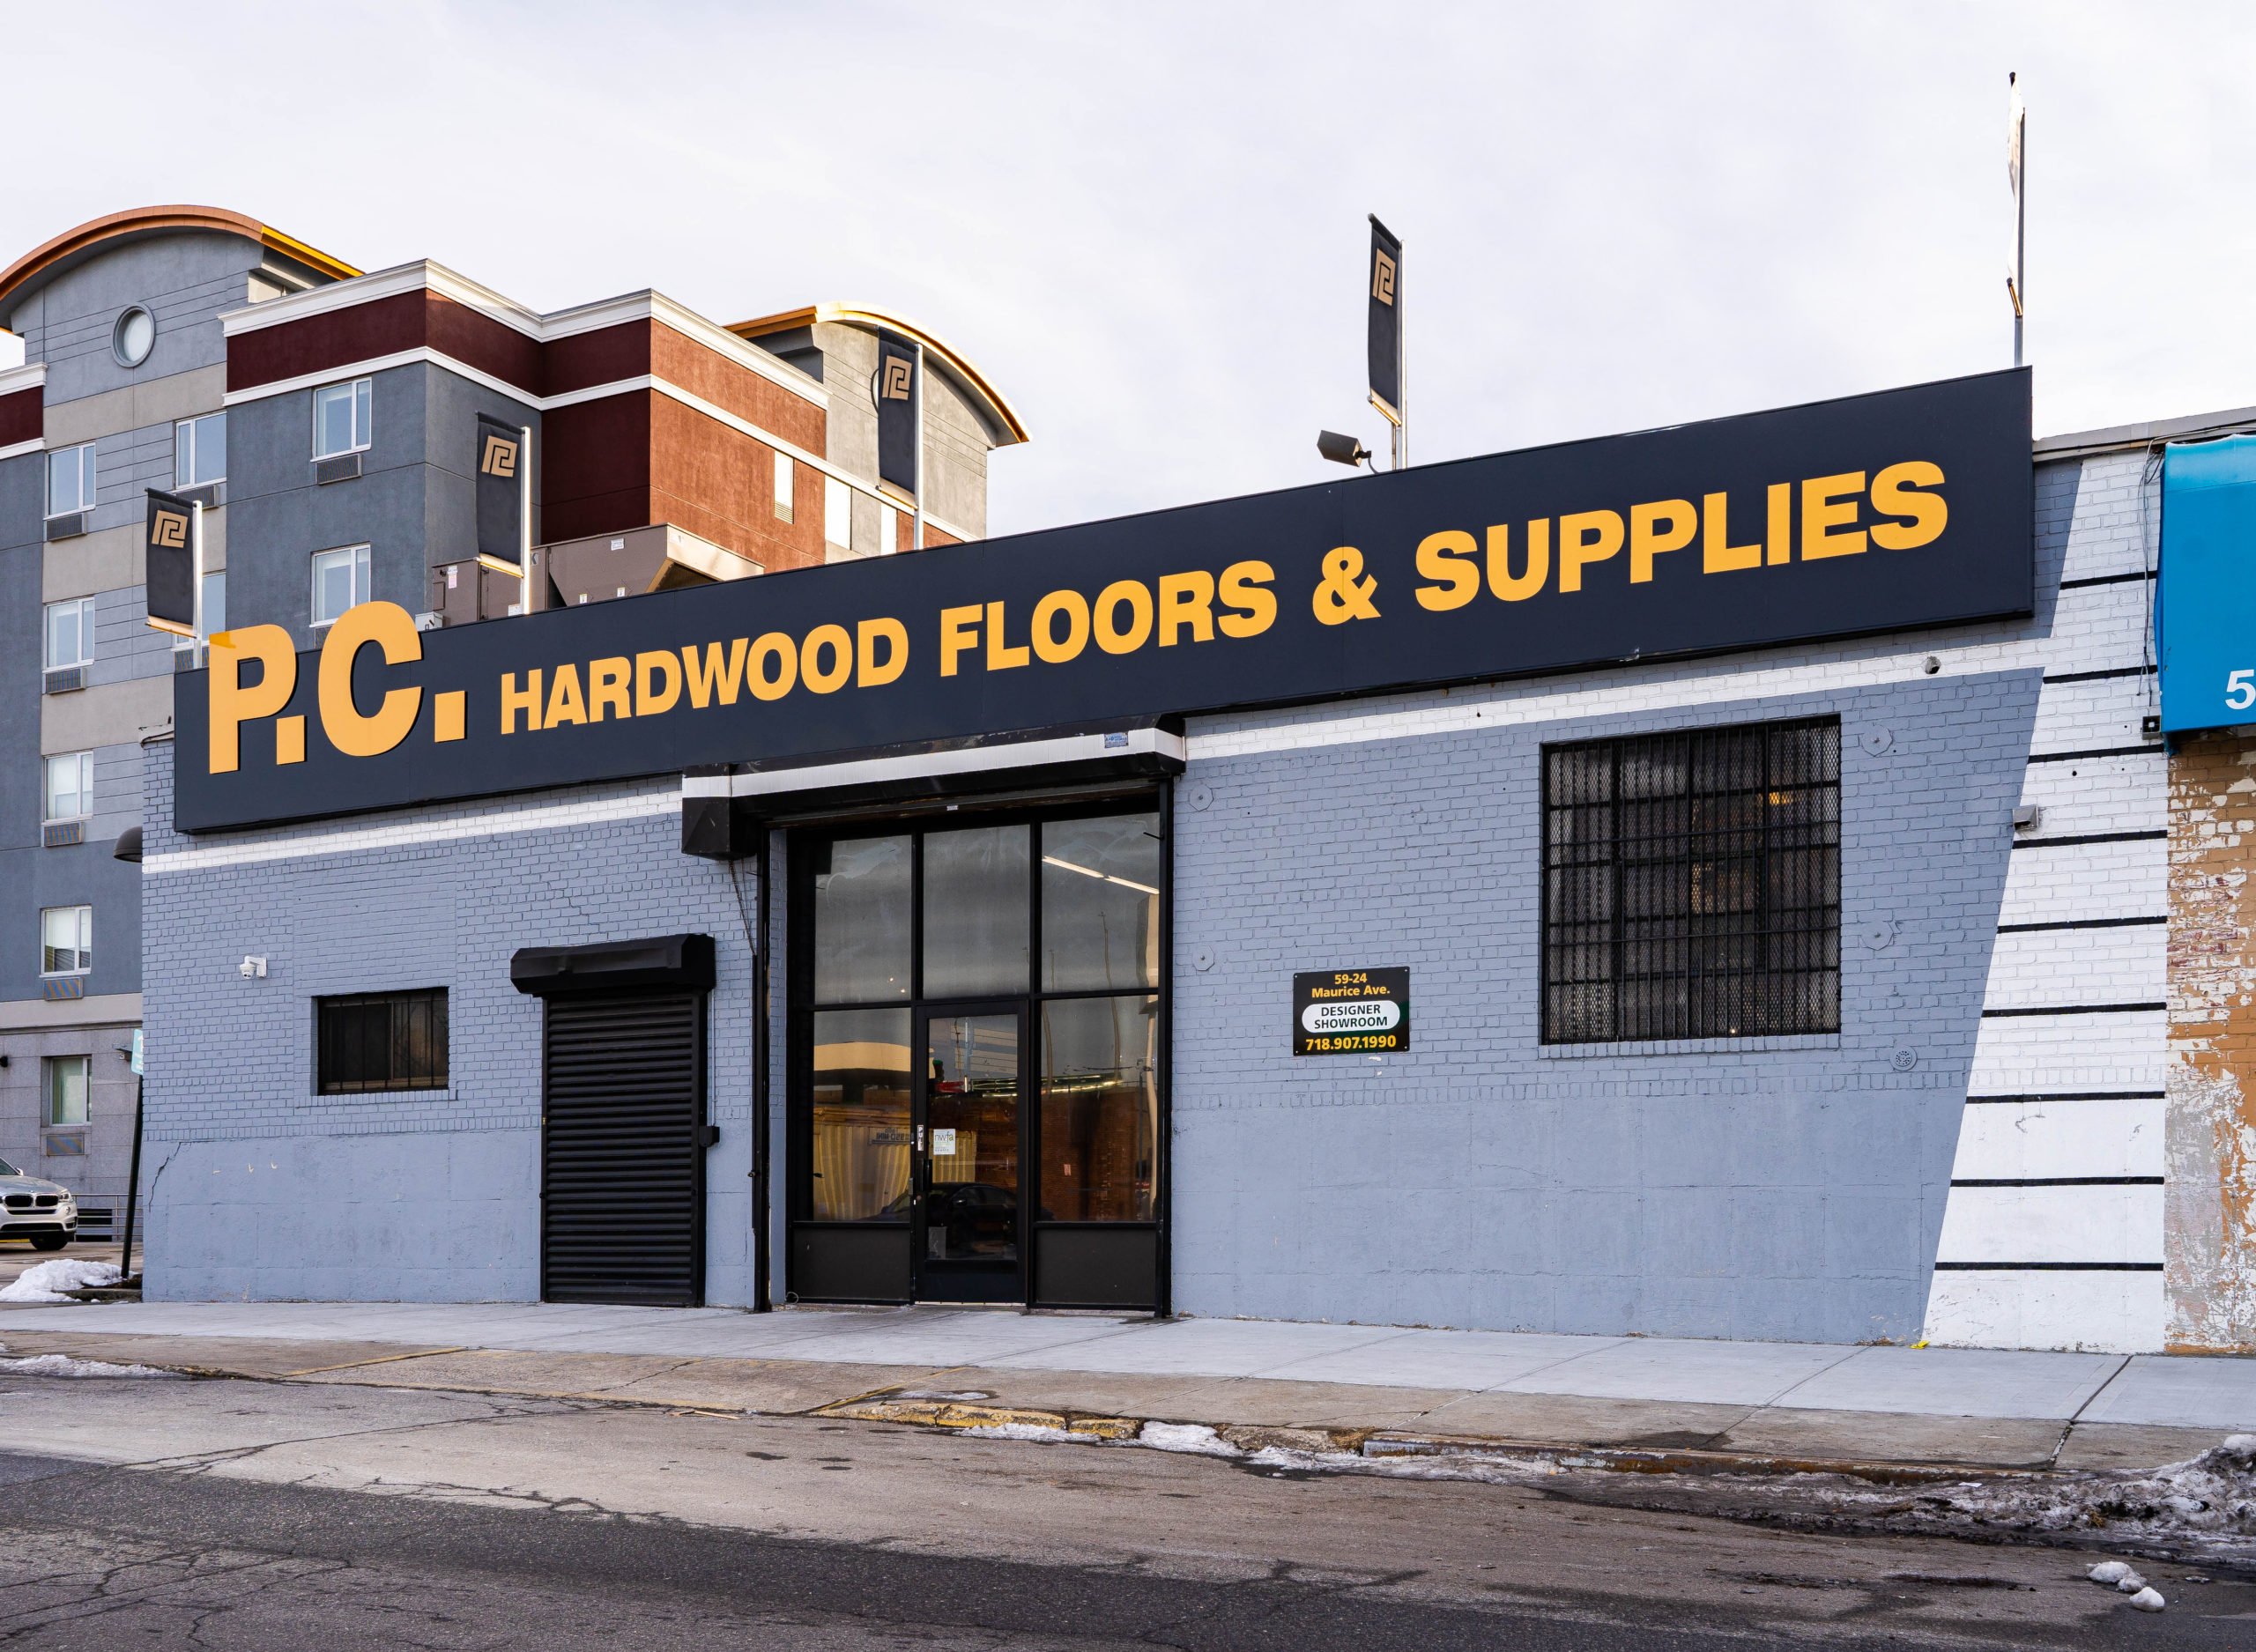 Maspeth Ny Hardwood Flooring Supplier, Hardwood Floor Supply Long Island Ny